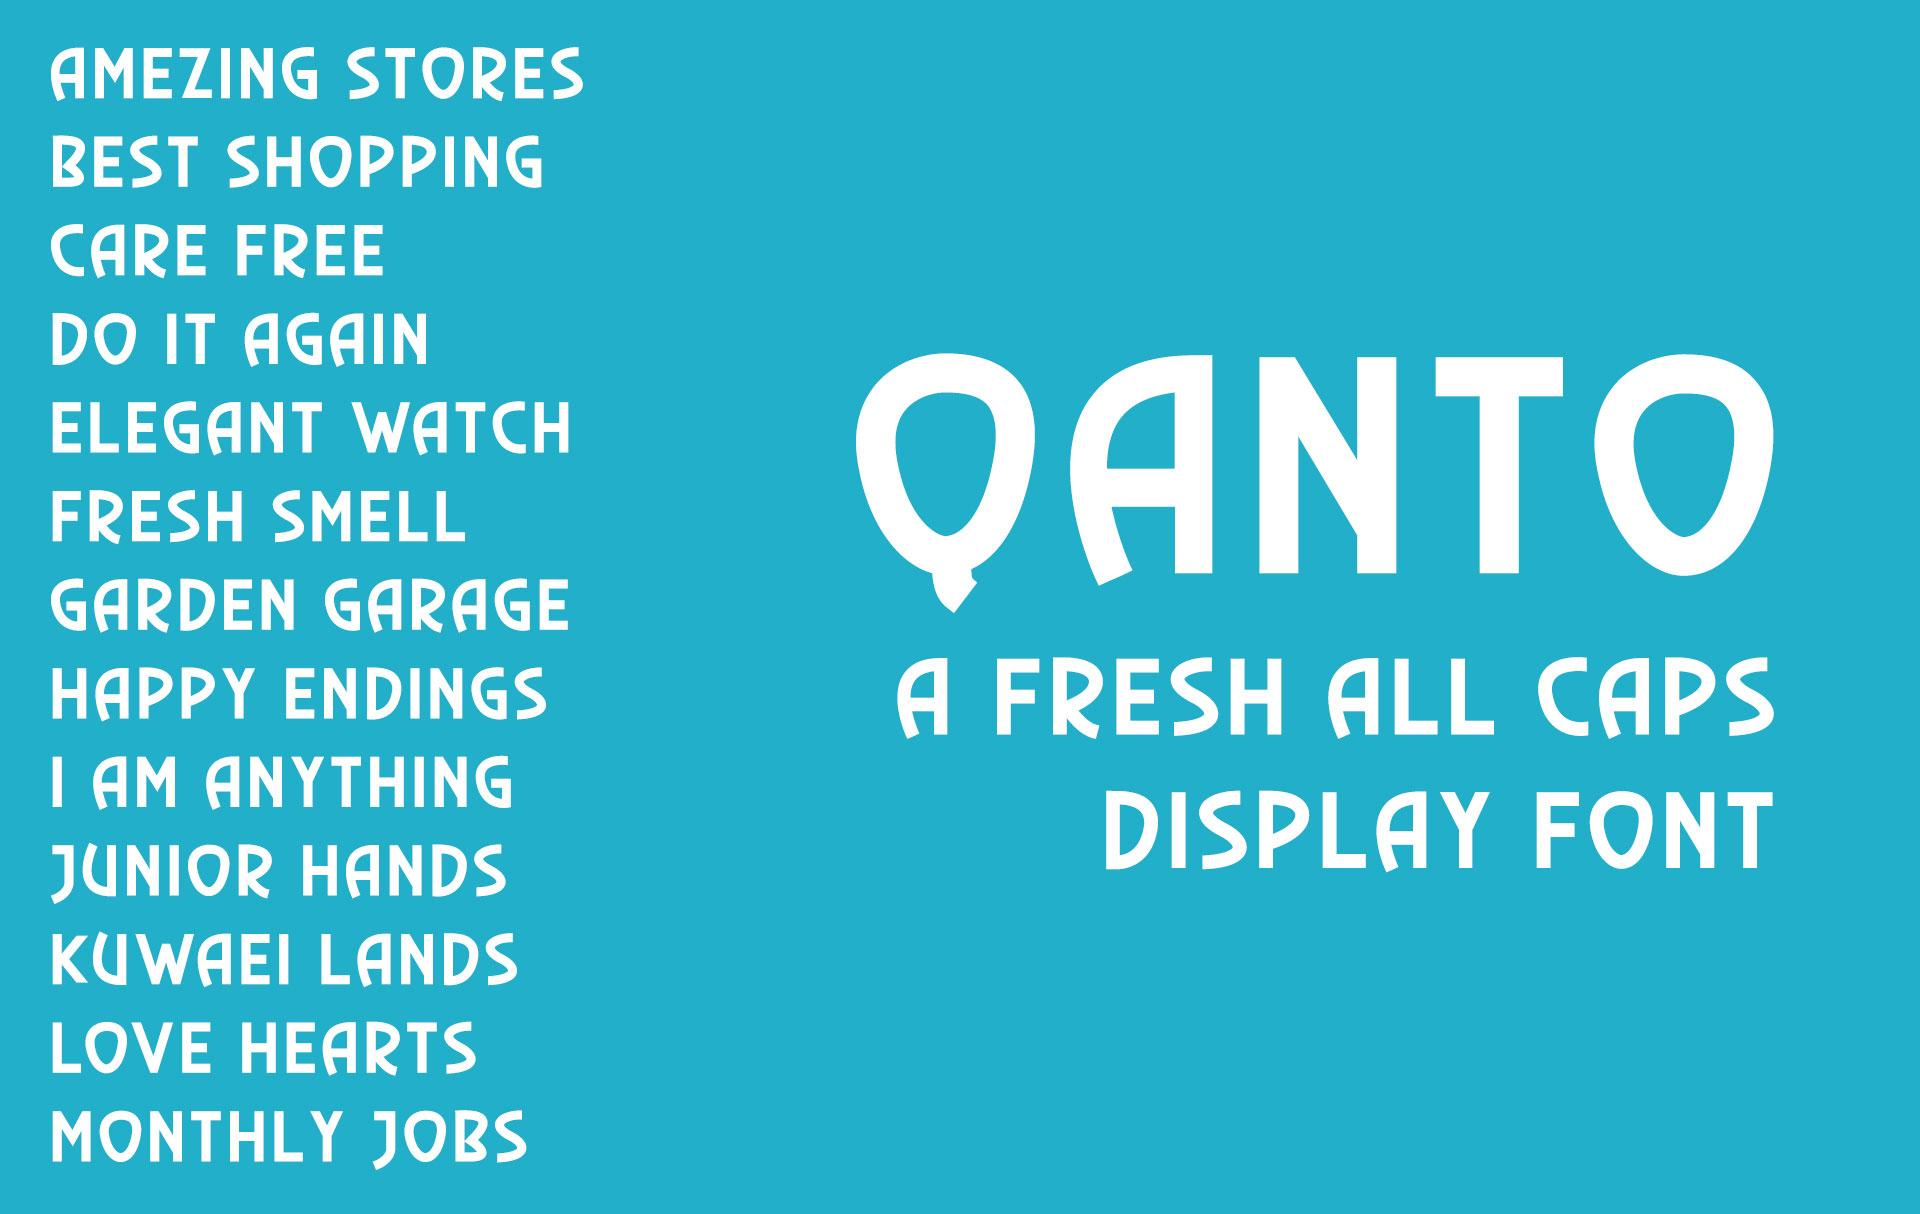 Qanto Display Font